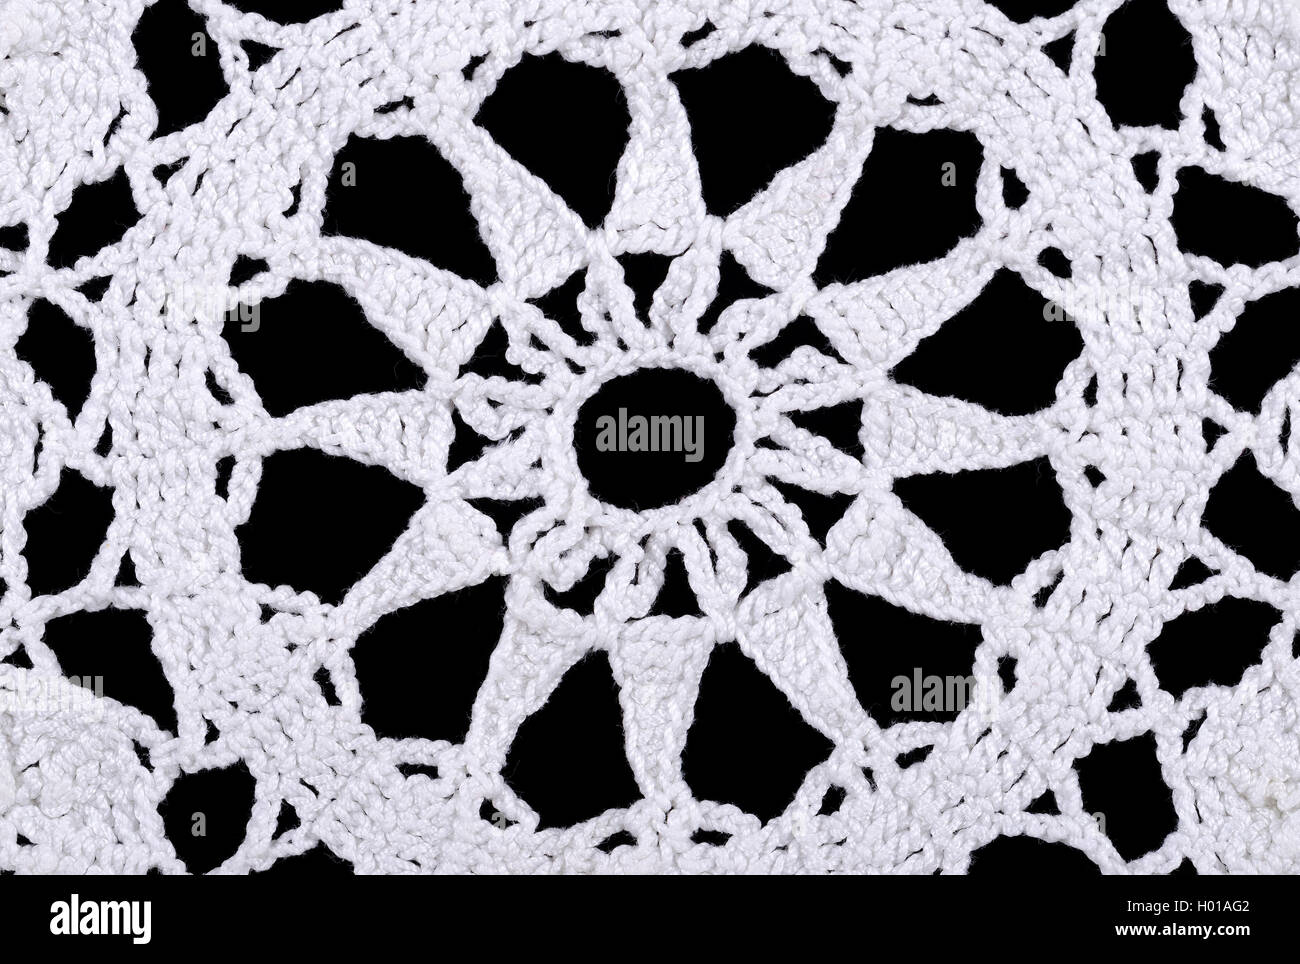 Étoile dans un napperon en crochet blanc. Crochet est un processus de création de boucles imbriquées par tissu de fil à l'aide d'un crochet. Banque D'Images